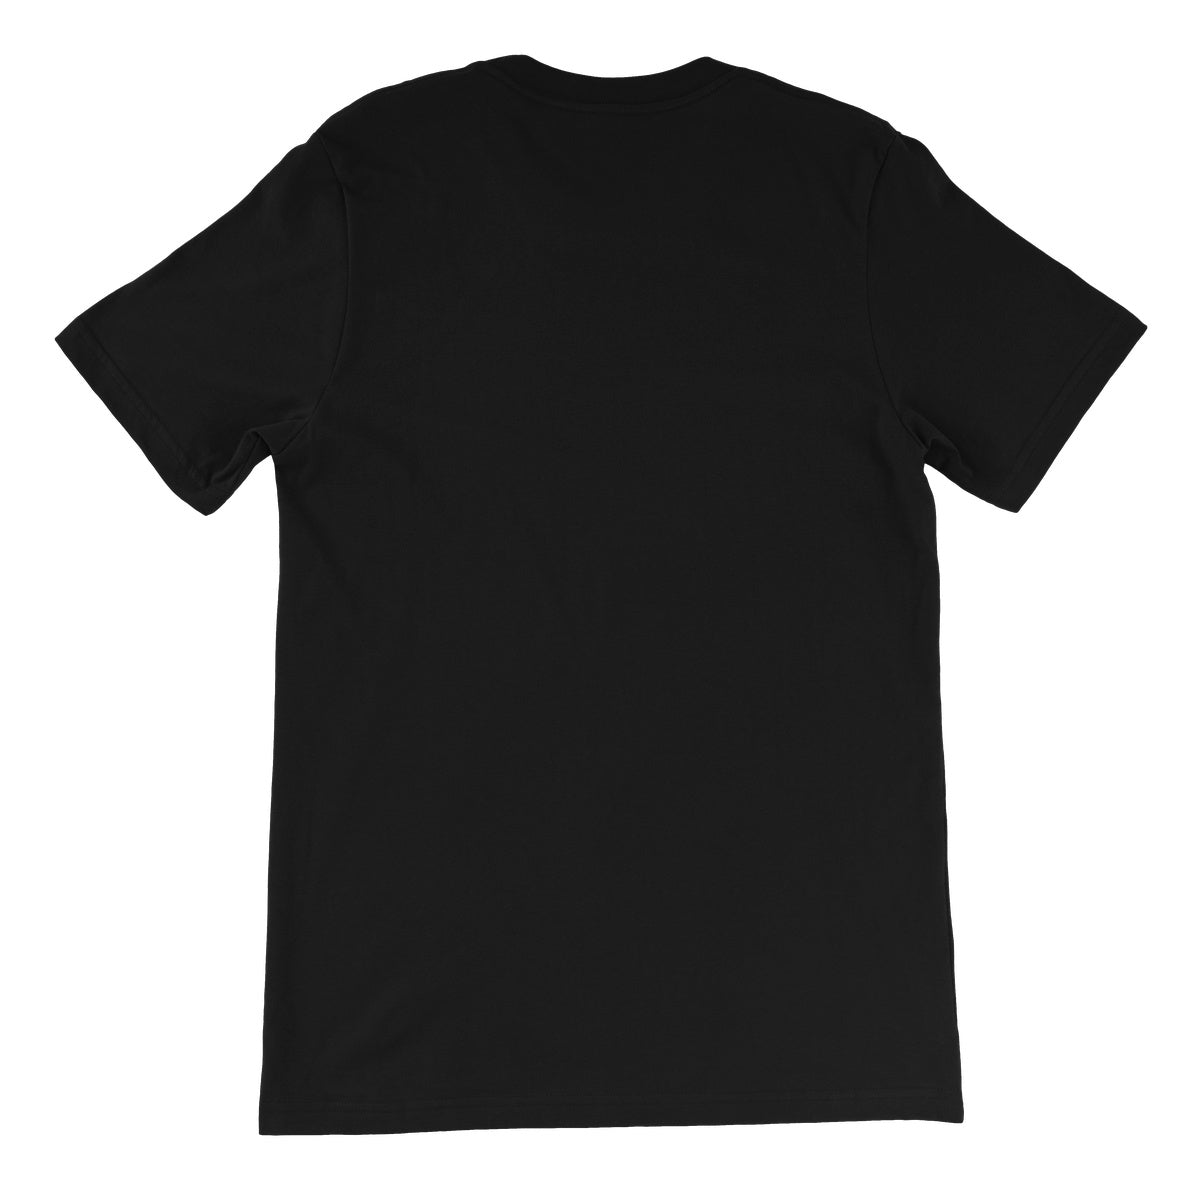 GRAPS - Gold Standard  Unisex Short Sleeve T-Shirt